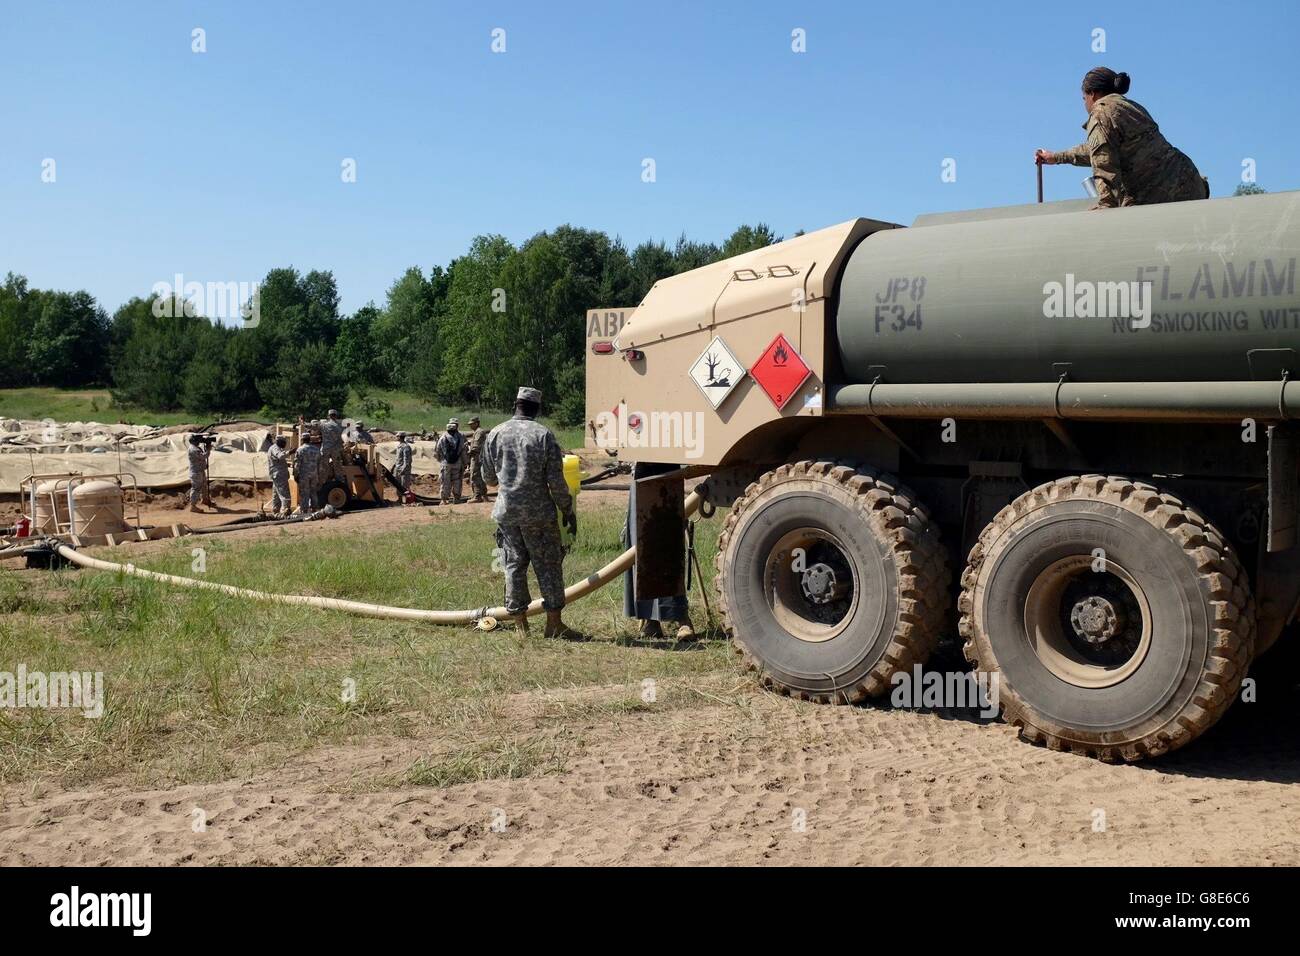 5 giugno 2016 - Oleszno, Polonia - fornitura di petrolio di specialisti con gli Stati Uniti Esercito della riserva 716th Quartermaster Company, Jersey City, N.J., riempire un 5,000-gallone autocisterna alla rinfusa fattoria di carburante durante la fase di esercizio Anakonda 2016 a Drawsko Pomorskie Area Formazione, Polonia, 4 giugno. Esercizio Anakonda 2016 è un polacco-led, multinazionale comune esercizio svolge in tutta la Polonia Giugno 7-17. Il 716th è il primo U.S. Esercito di unità di riserva per far funzionare una fattoria del carburante in Polonia. L'esercizio prevede più di 25.000 partecipanti provenienti da più di 20 nazioni. Esercizio Anakonda 2016 è il principale evento di formazione Foto Stock